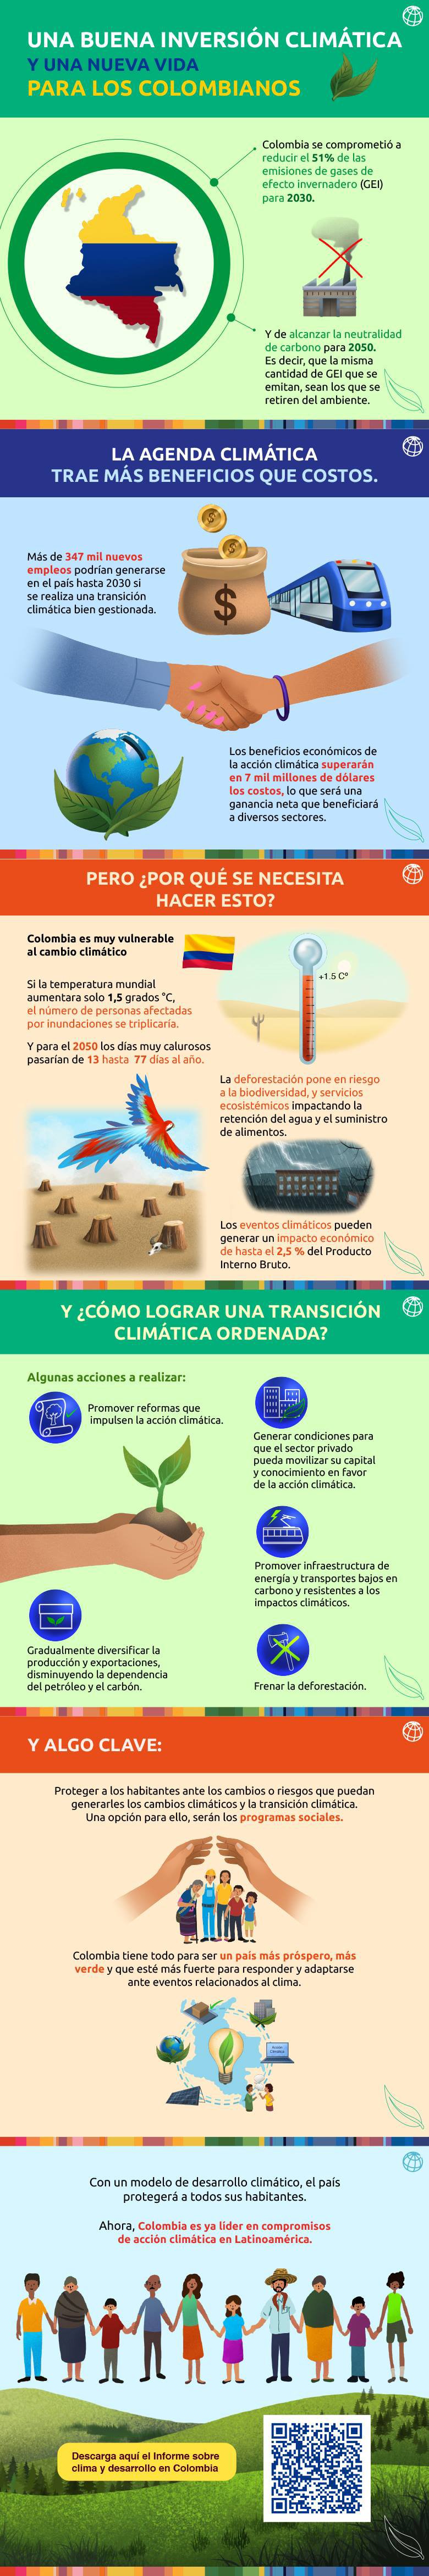 Informe de Cambio Climático en Colombia